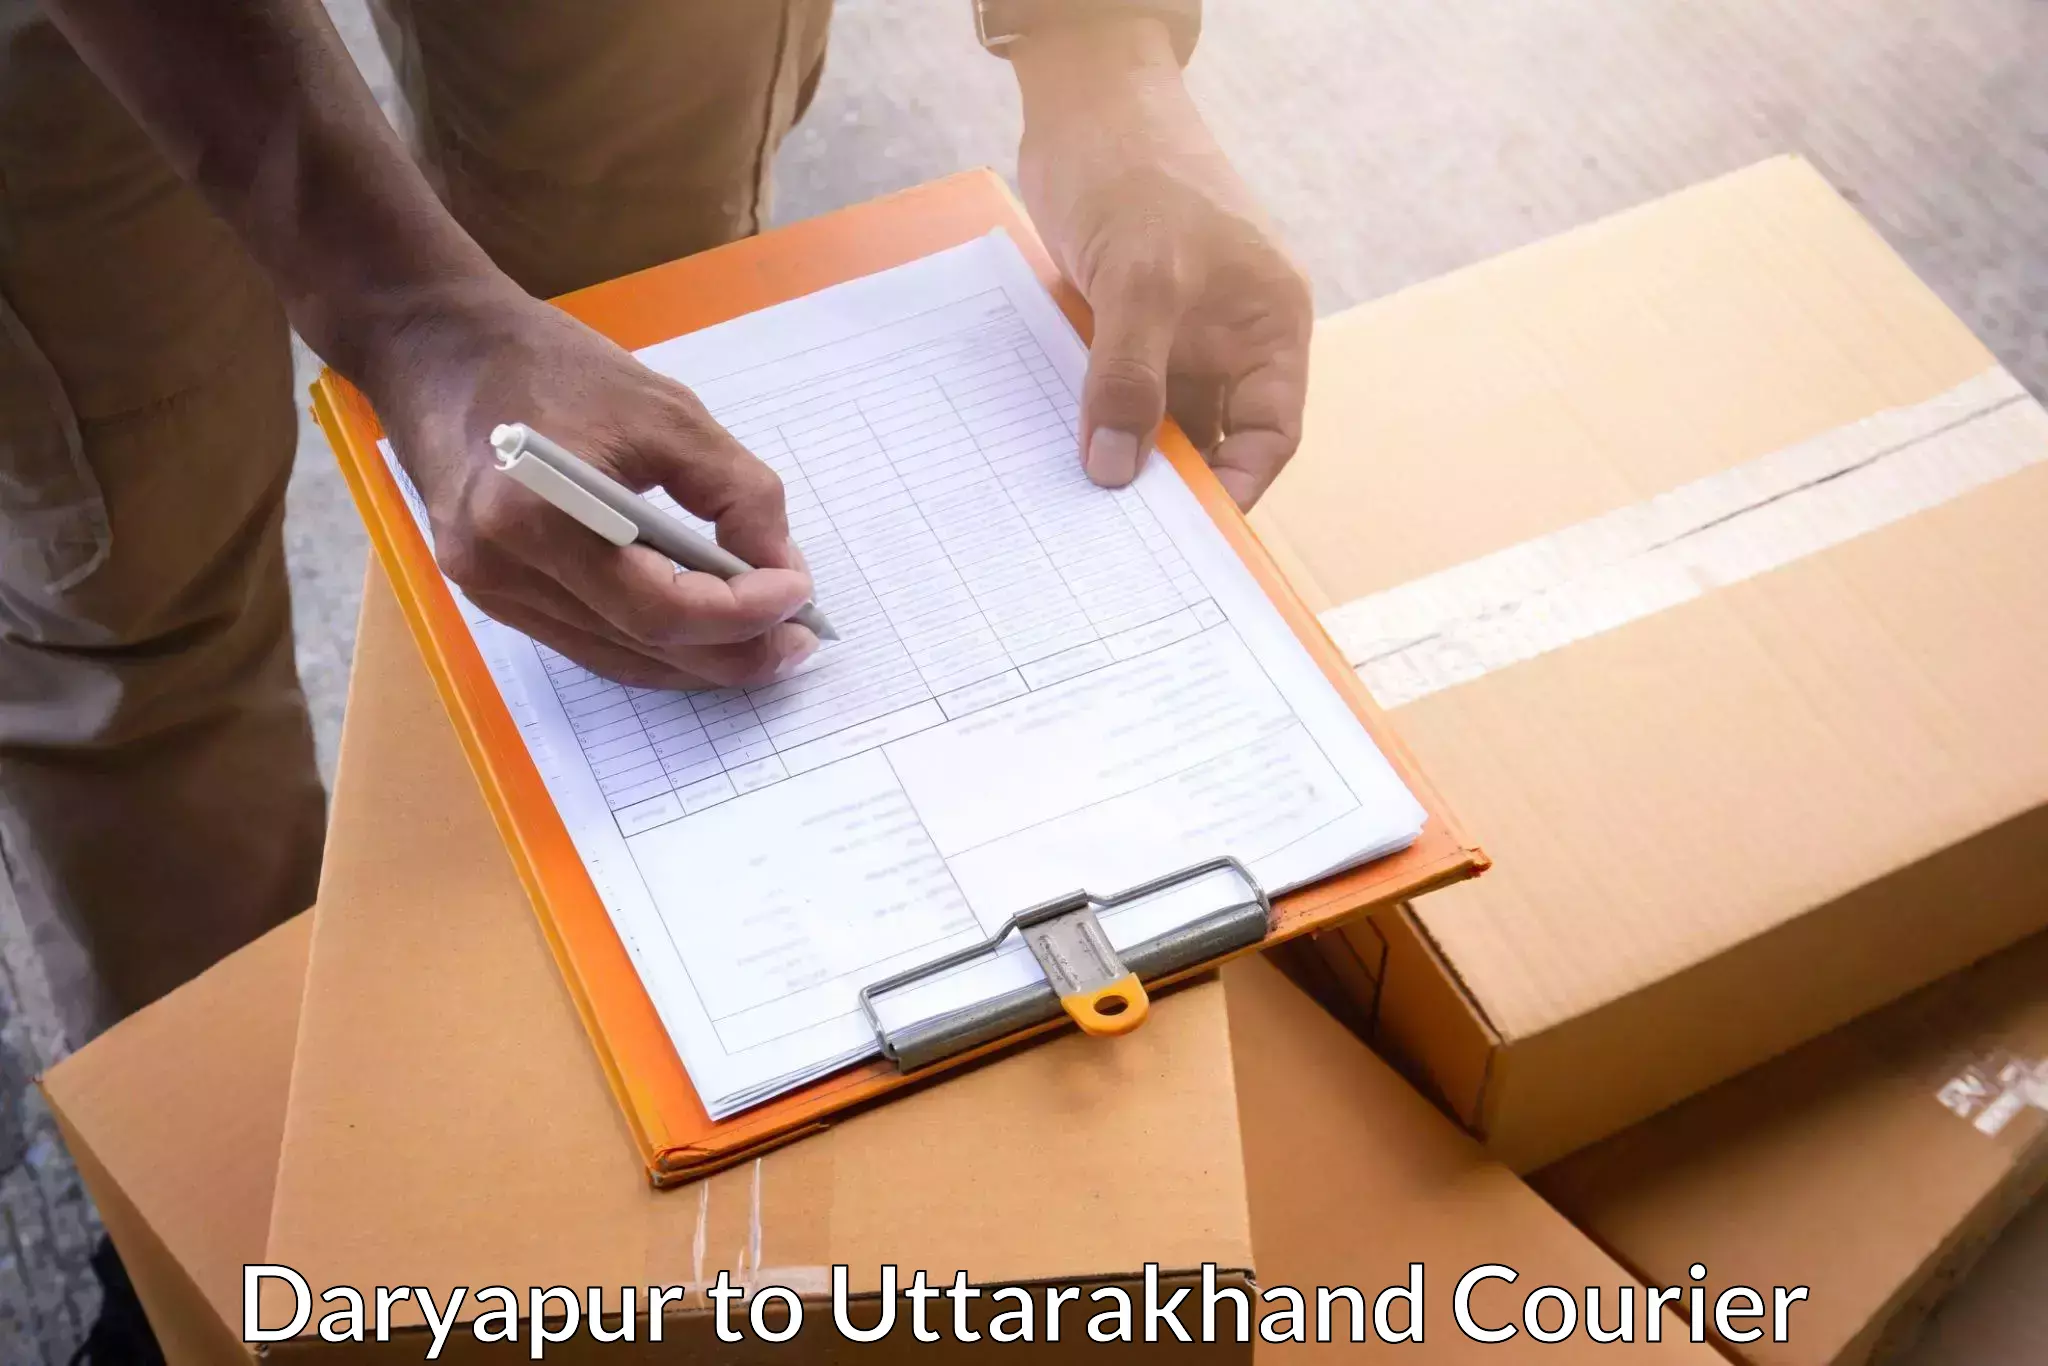 Online package tracking Daryapur to Someshwar